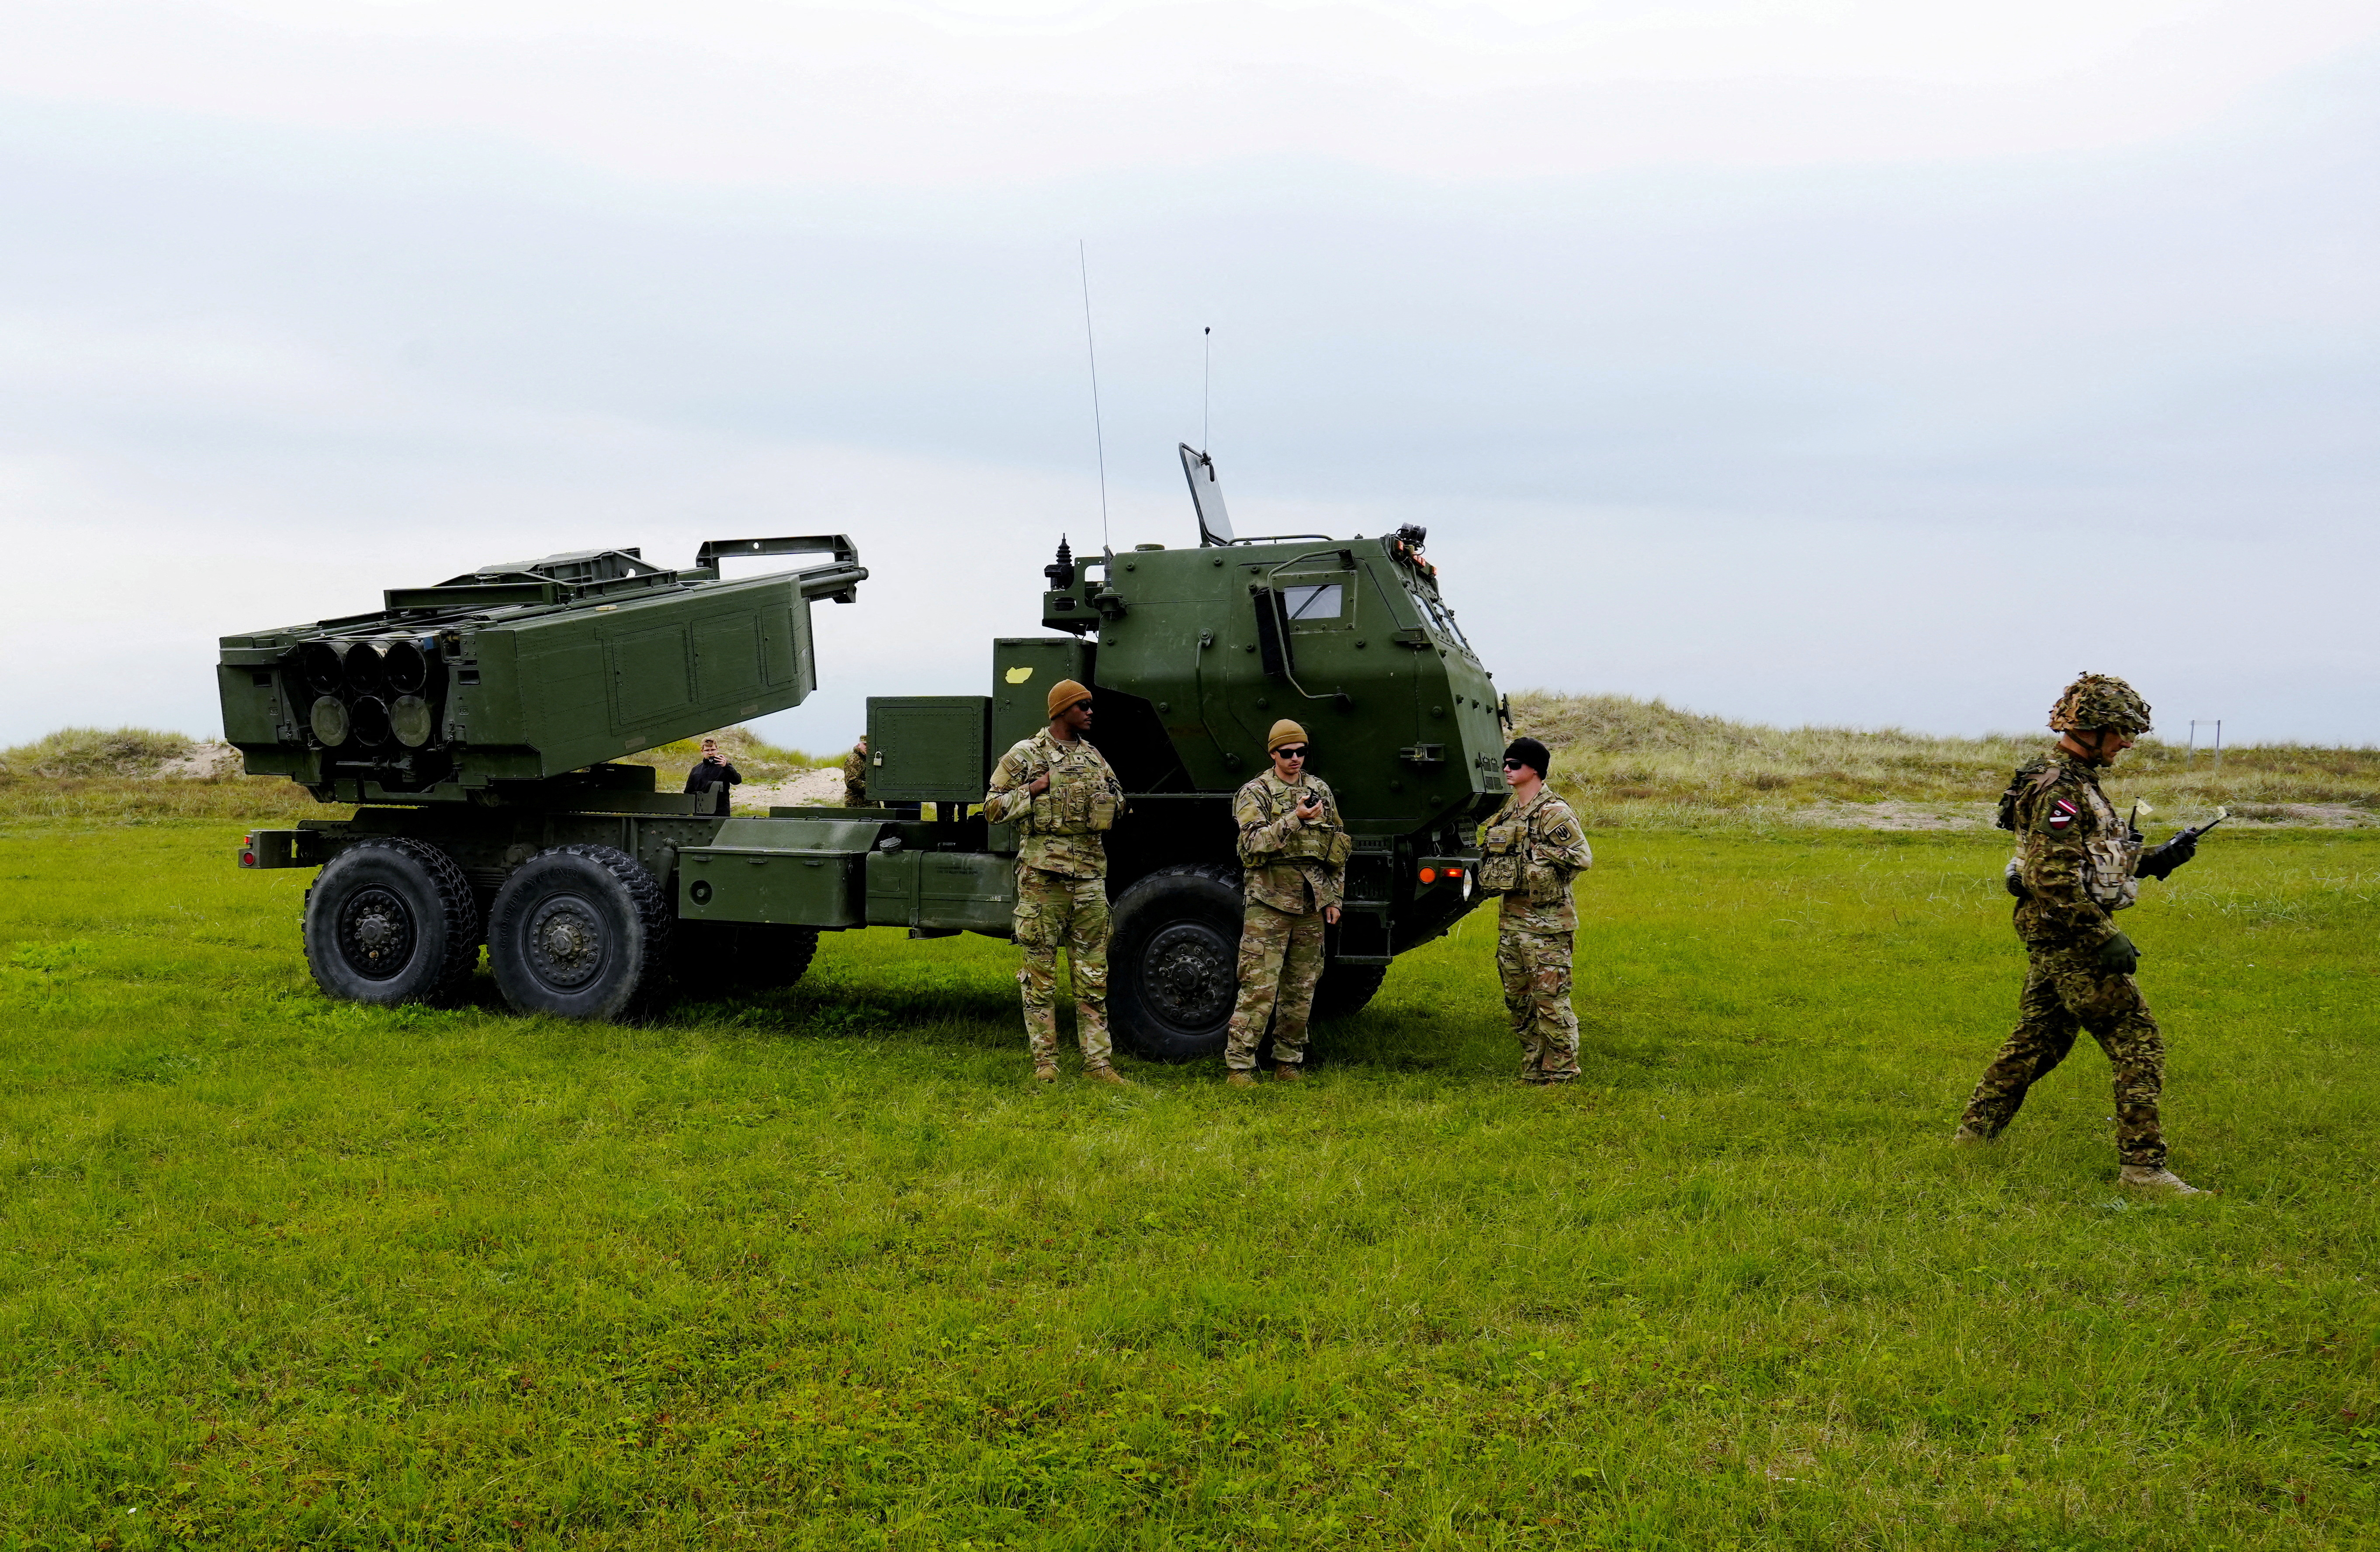 Foto de archivo: Un sistema de cohetes de artillería de alta movilidad M142 (HIMARS) participa en un ejercicio militar cerca de Liepaja, Letonia (REUTERS/Ints Kalnins)